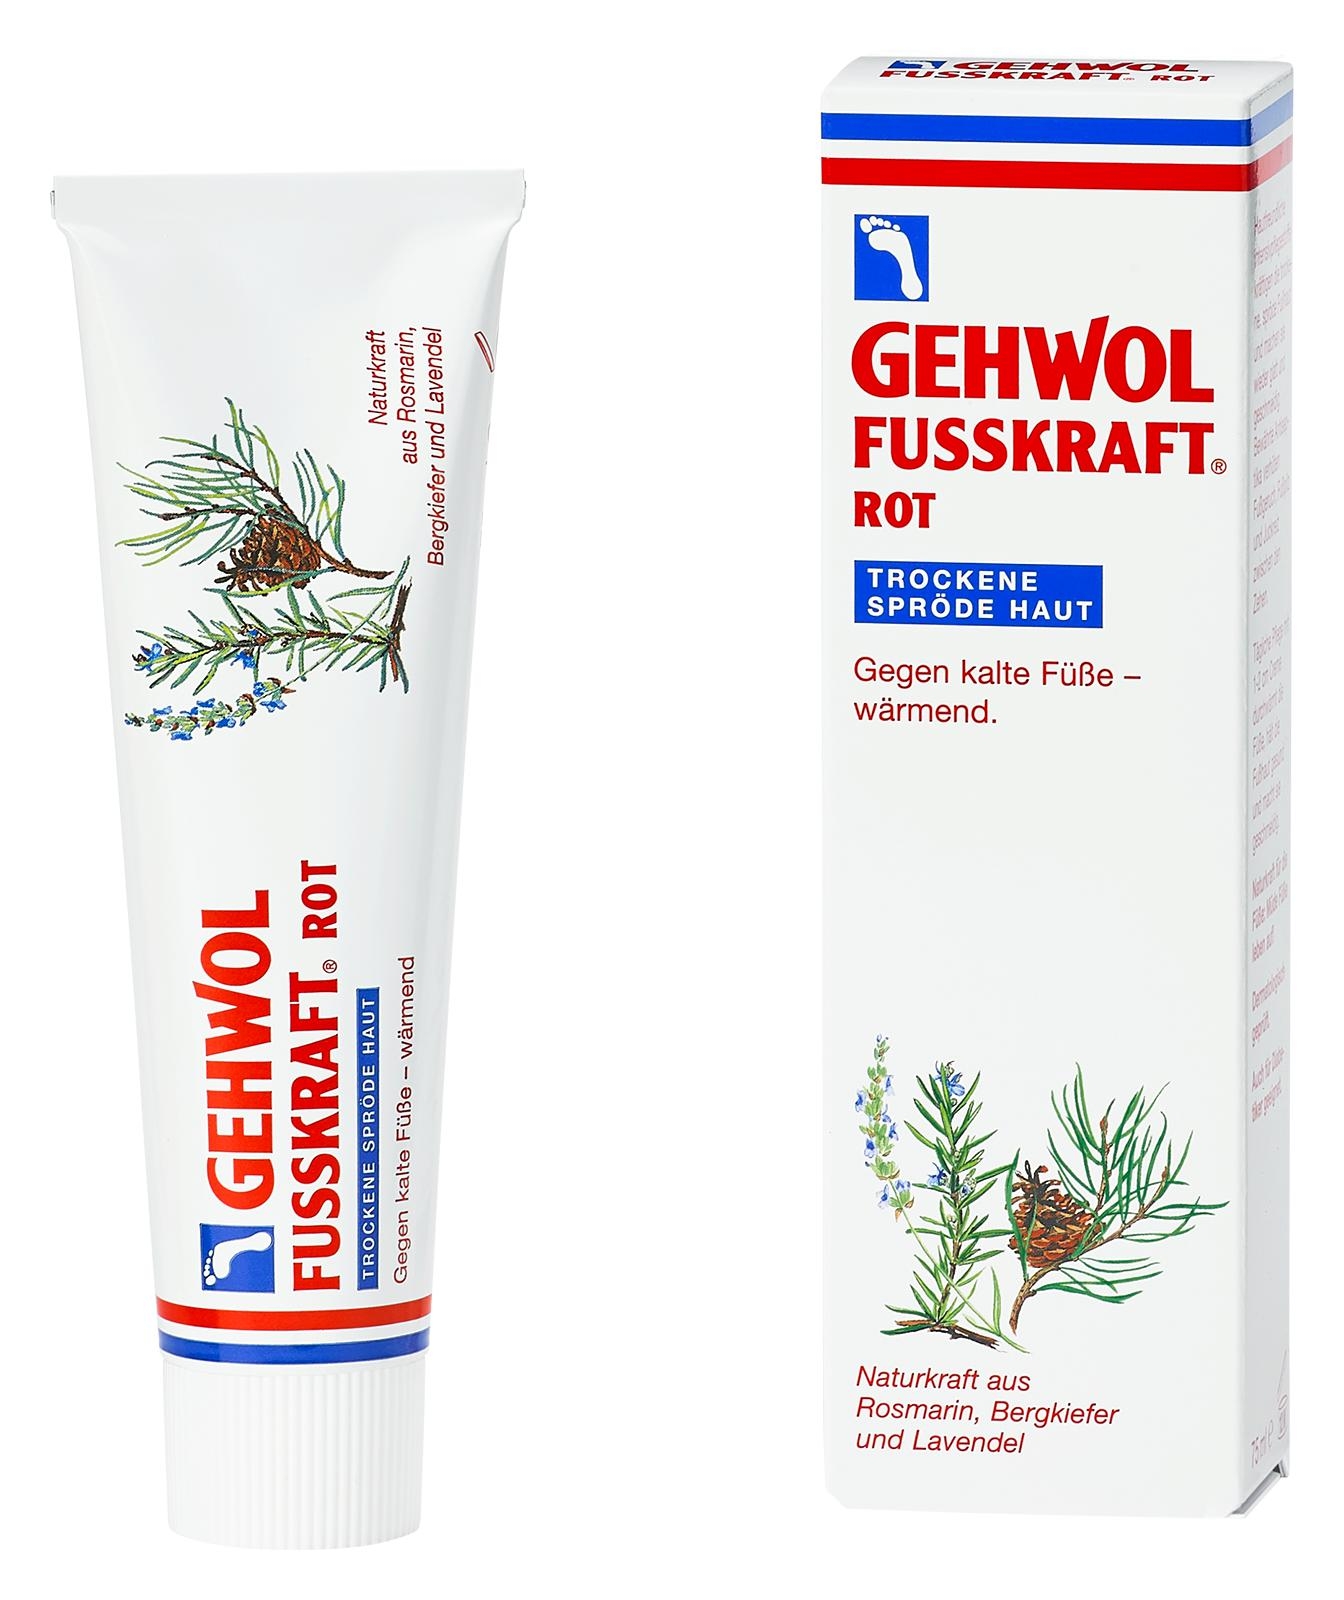 GEHWOL FUSSKRAFT ROT für Trockene Haut | 6x 75 ml (450 ml)